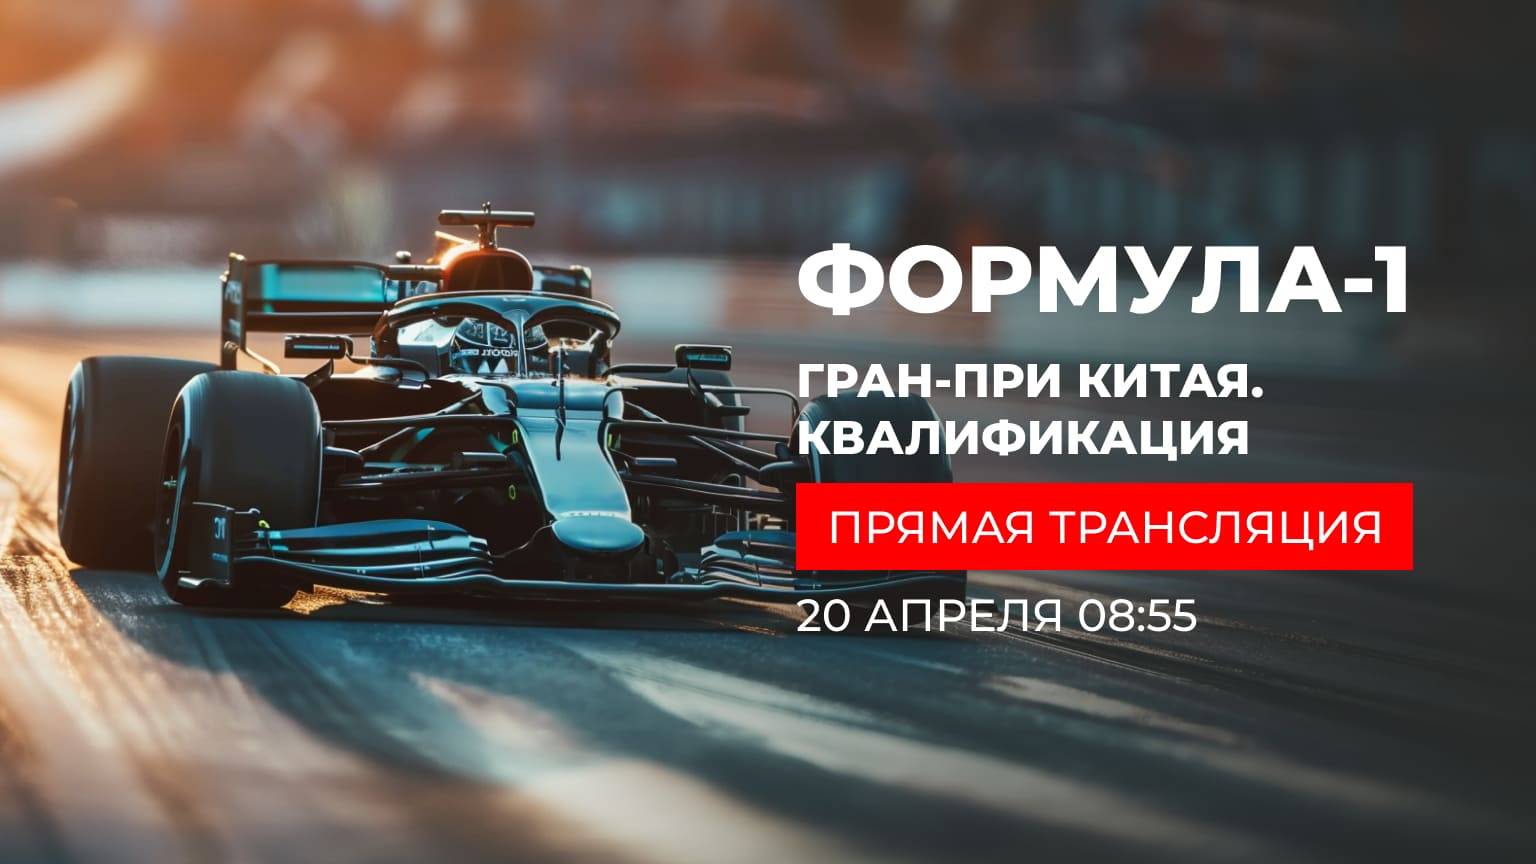 Основная КВАЛИФИКАЦИЯ КИТАЙ 5 этап Ф1 2024 Алексей Попов и Наташа Фабричнова (Формула 1 - Ф1)